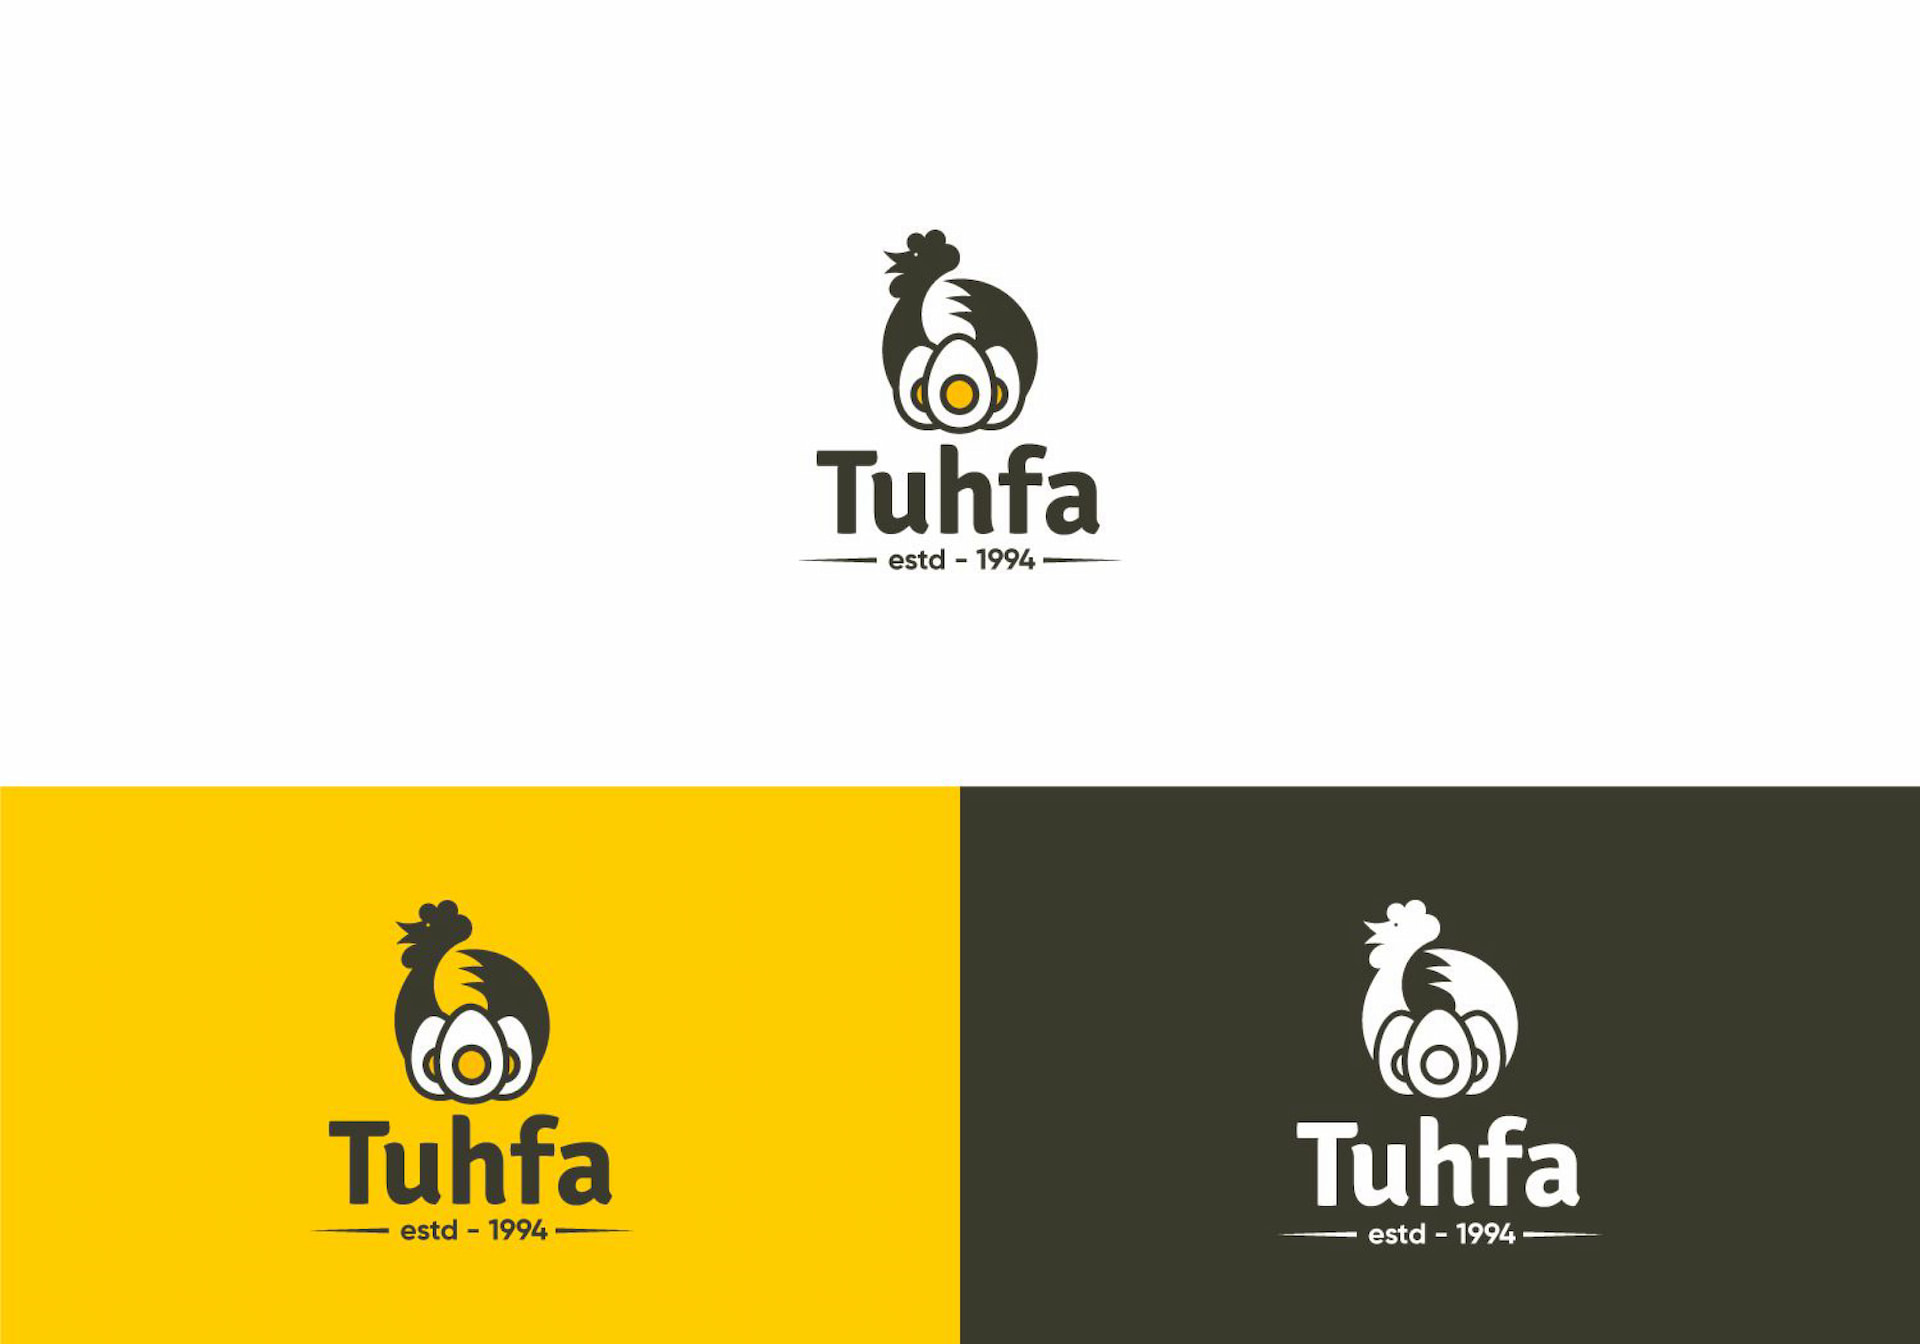 Tuhfa company